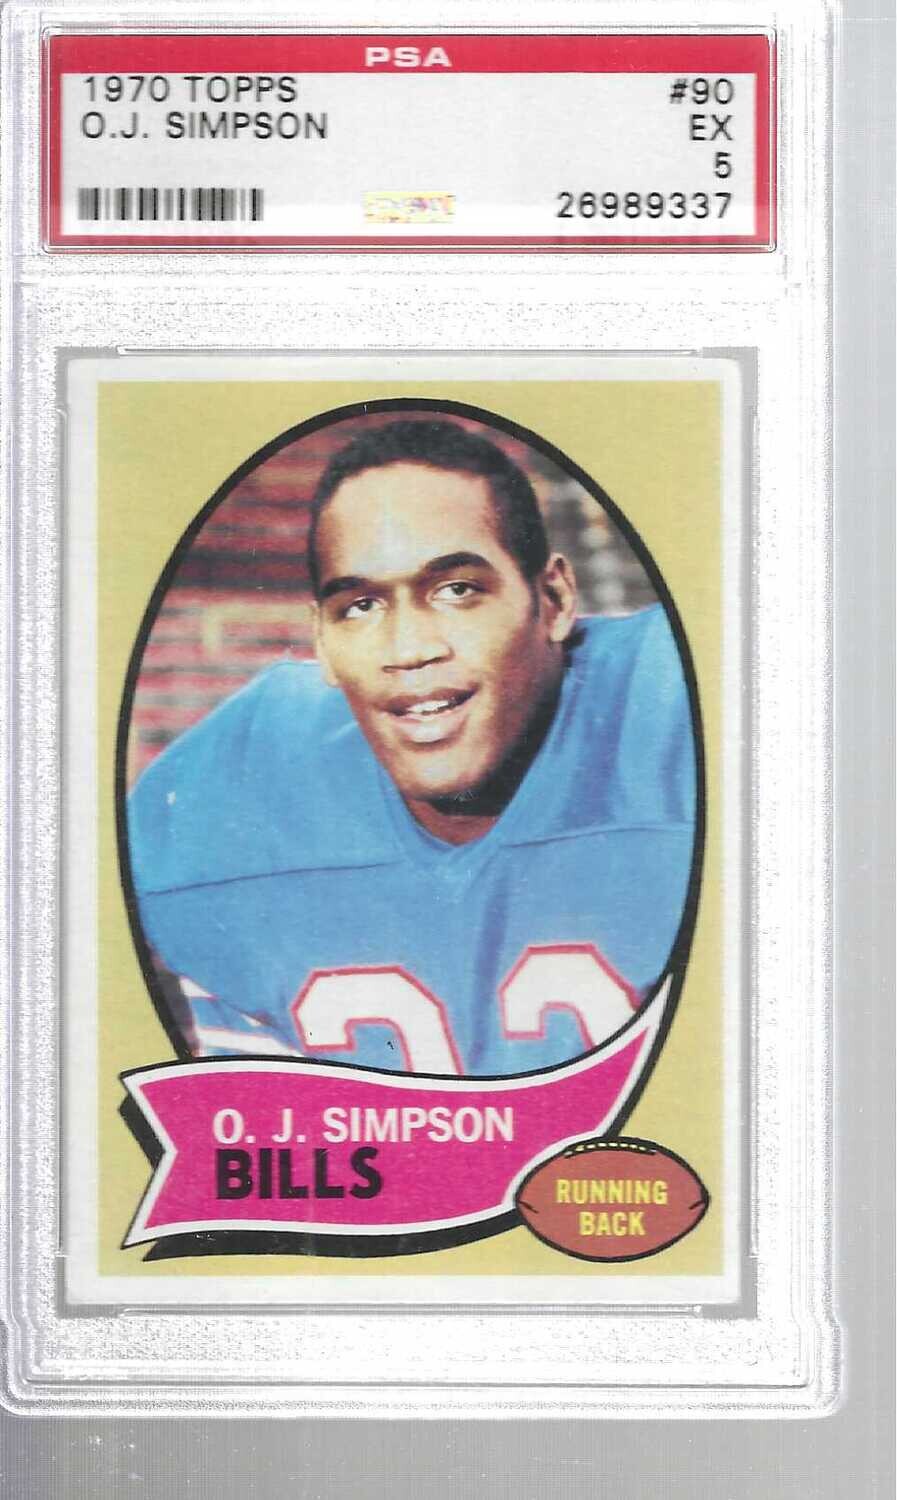 1970 Topps #90 O.J. Simpson rookie PSA 5